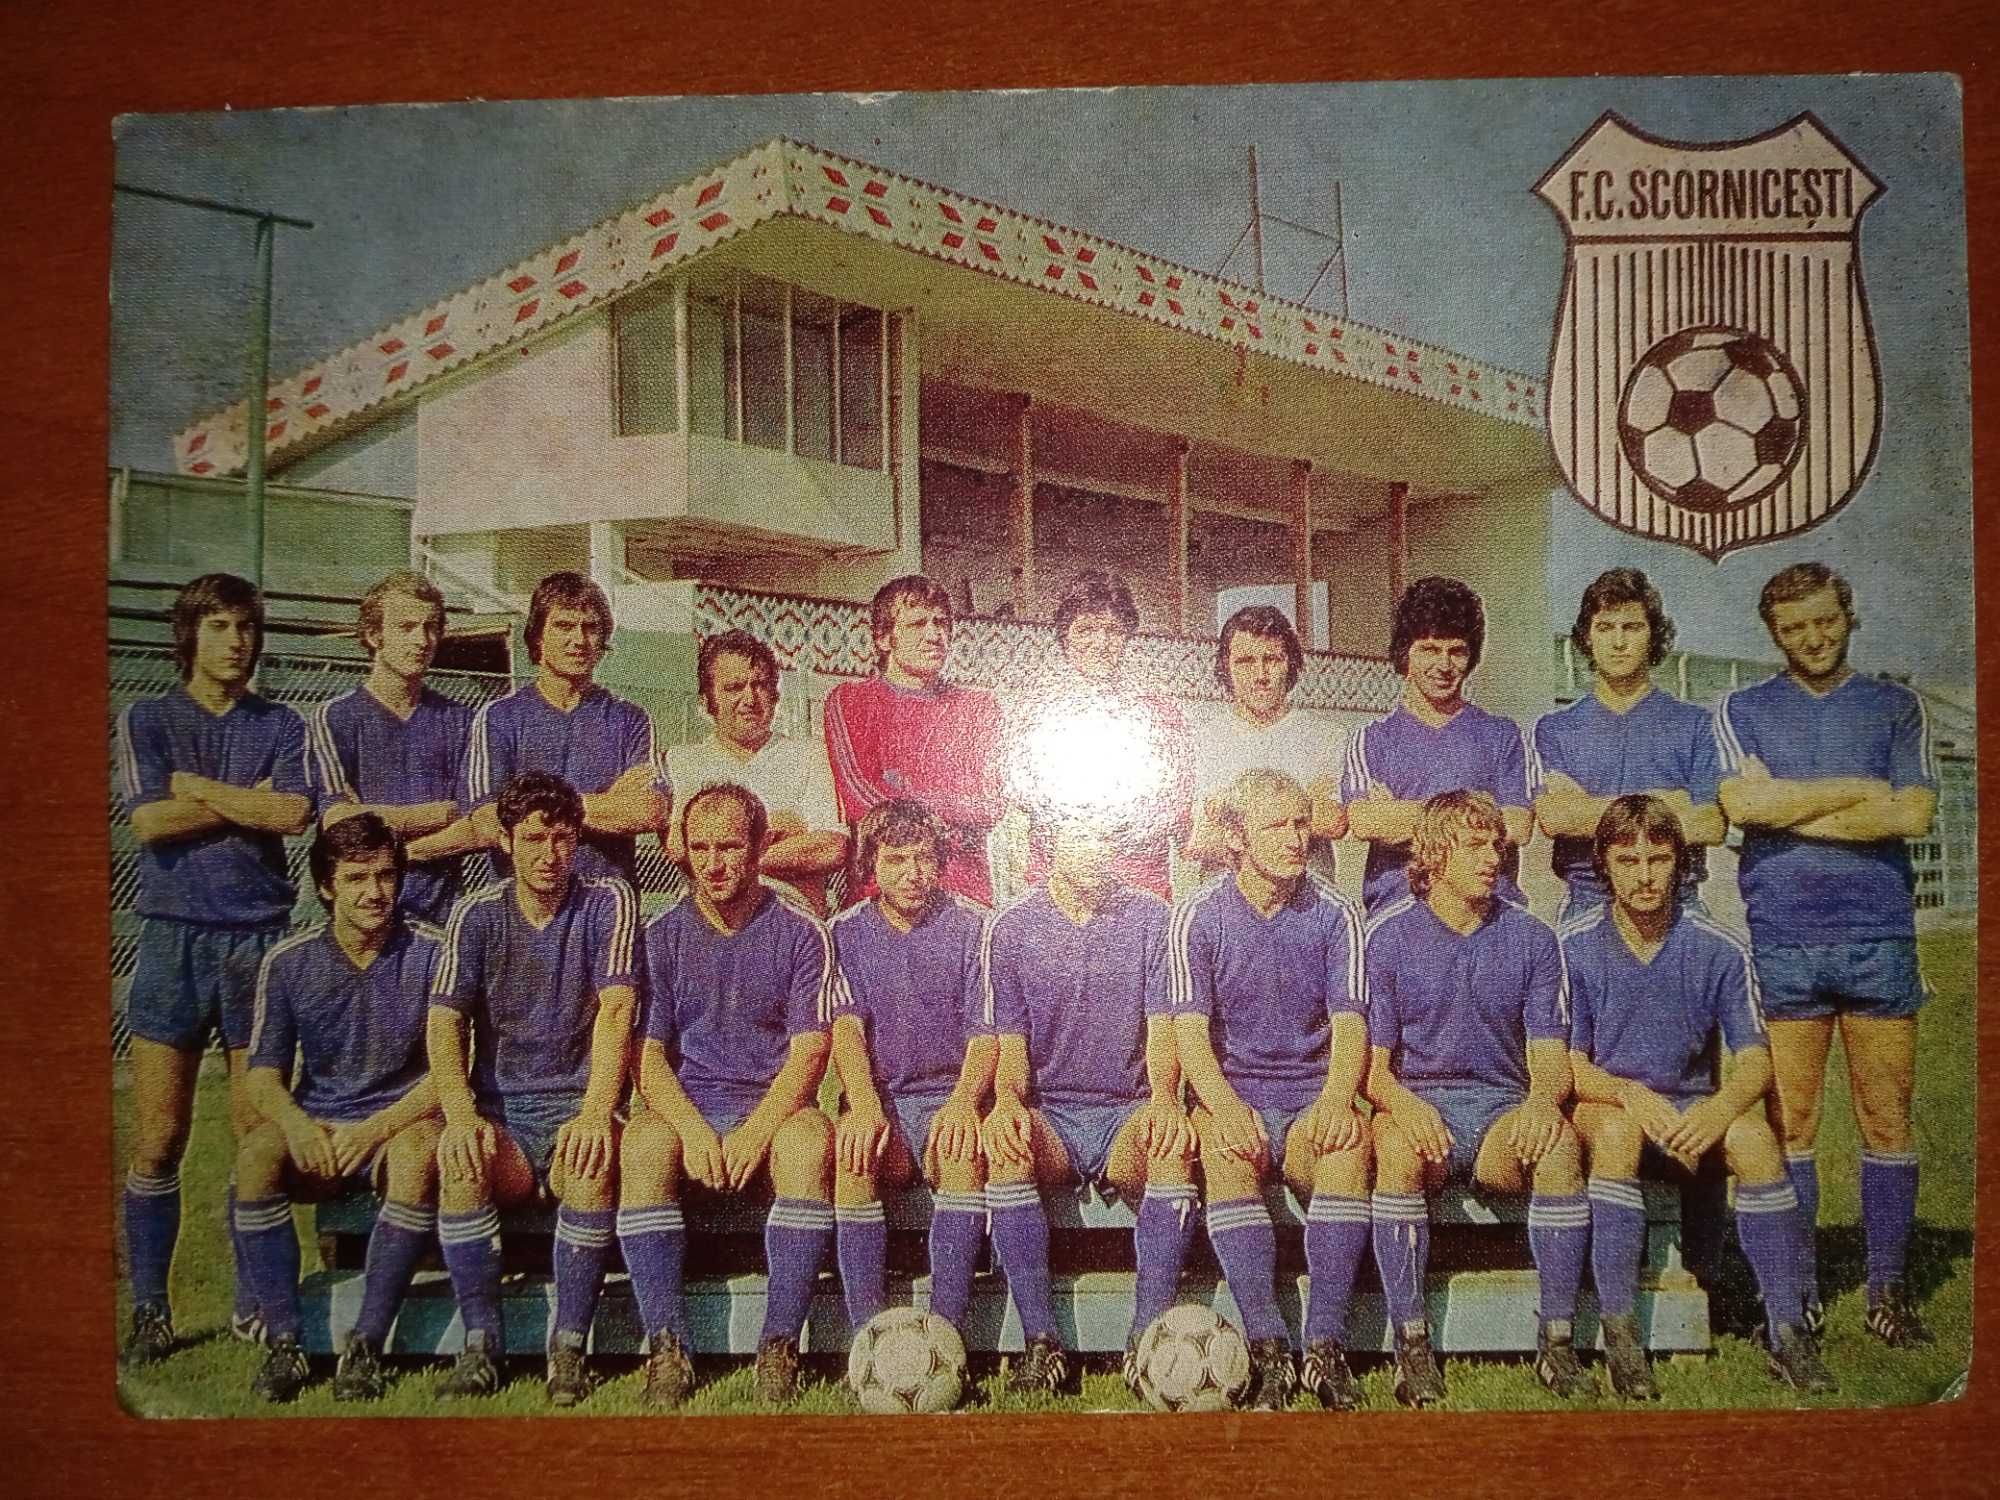 Fotografie cu echipa FC SCORNICESTI din 1980